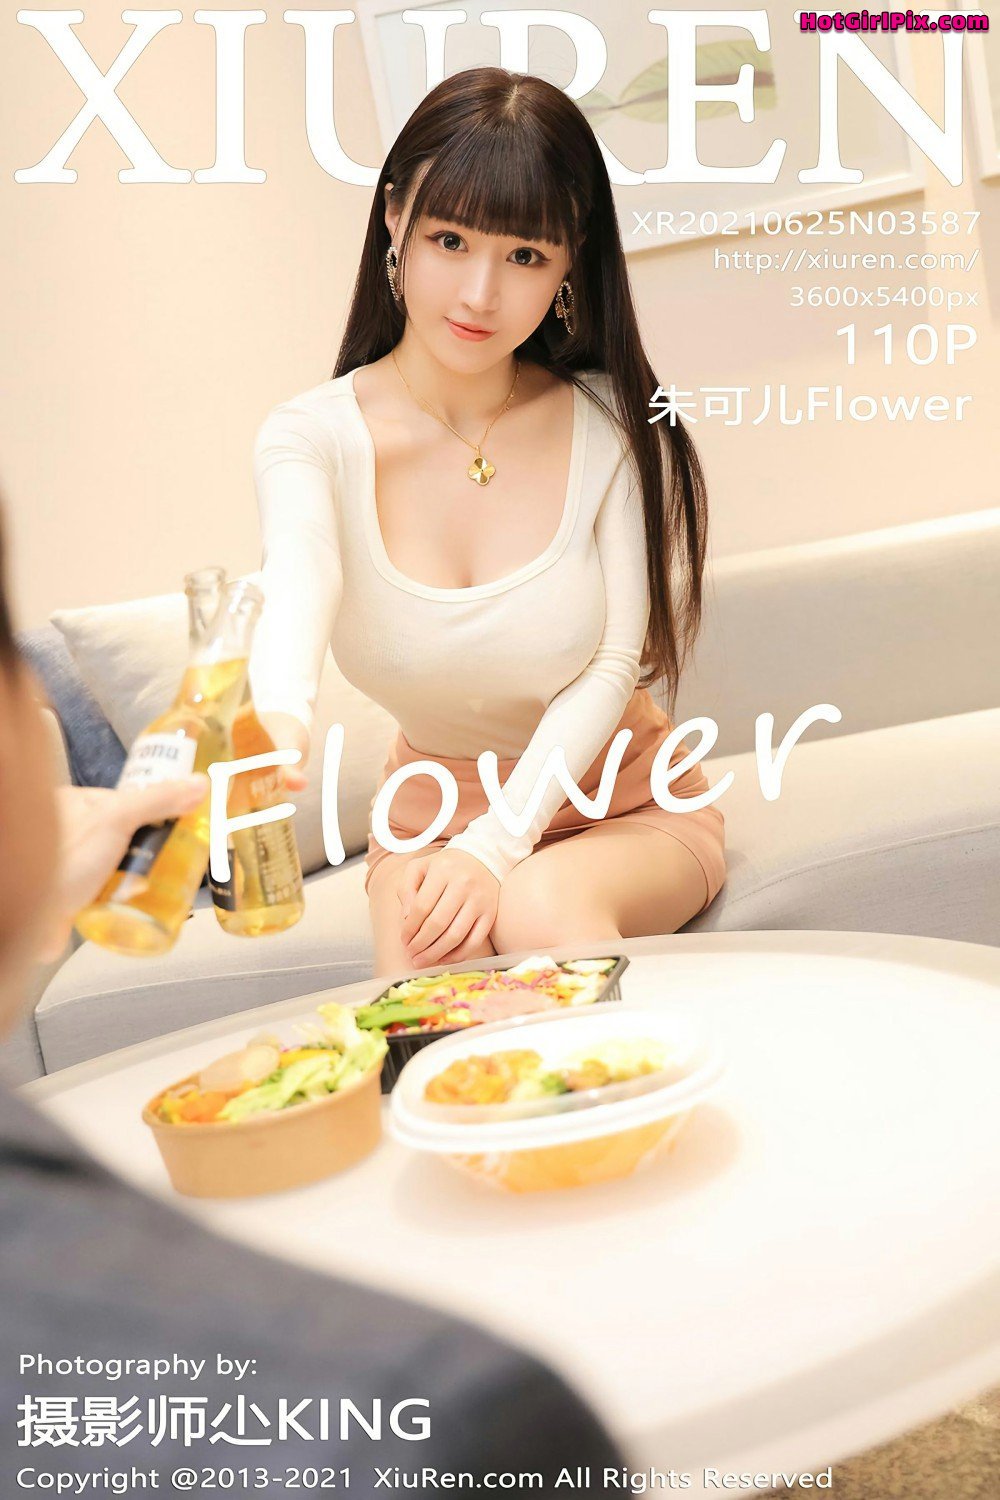 [XIUREN] No.3587 Zhu Ke Er 朱可儿Flower Cover Photo